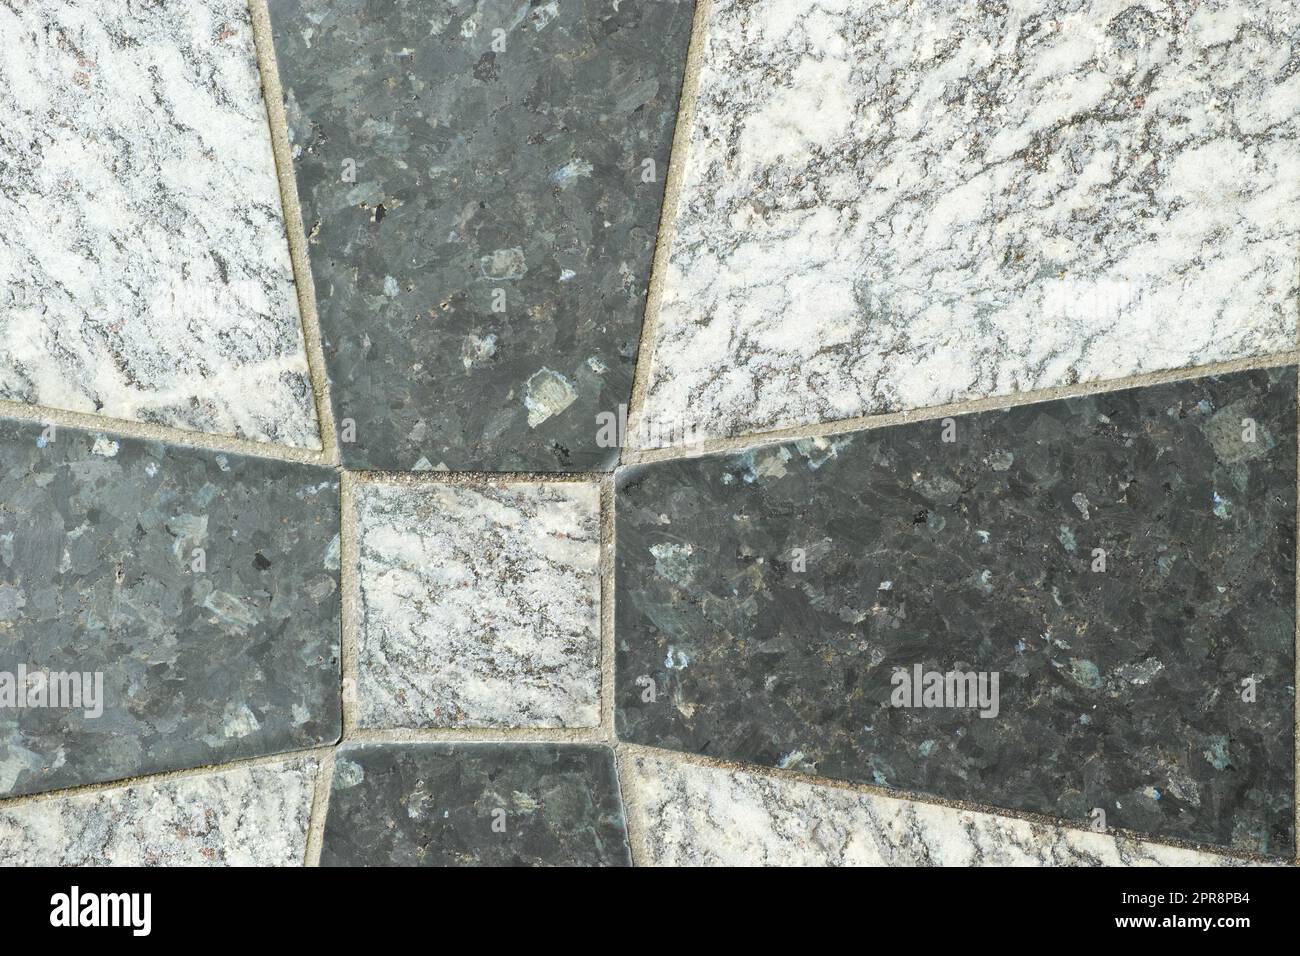 Nahaufnahme von schwarzen und grauen Granitfliesen auf einem Boden. Kreatives Architekturdesign aus Granitfliesen, die zu einem Kreuzmuster zementiert sind. Texturhintergrund aus Naturstein für Innendesign Stockfoto